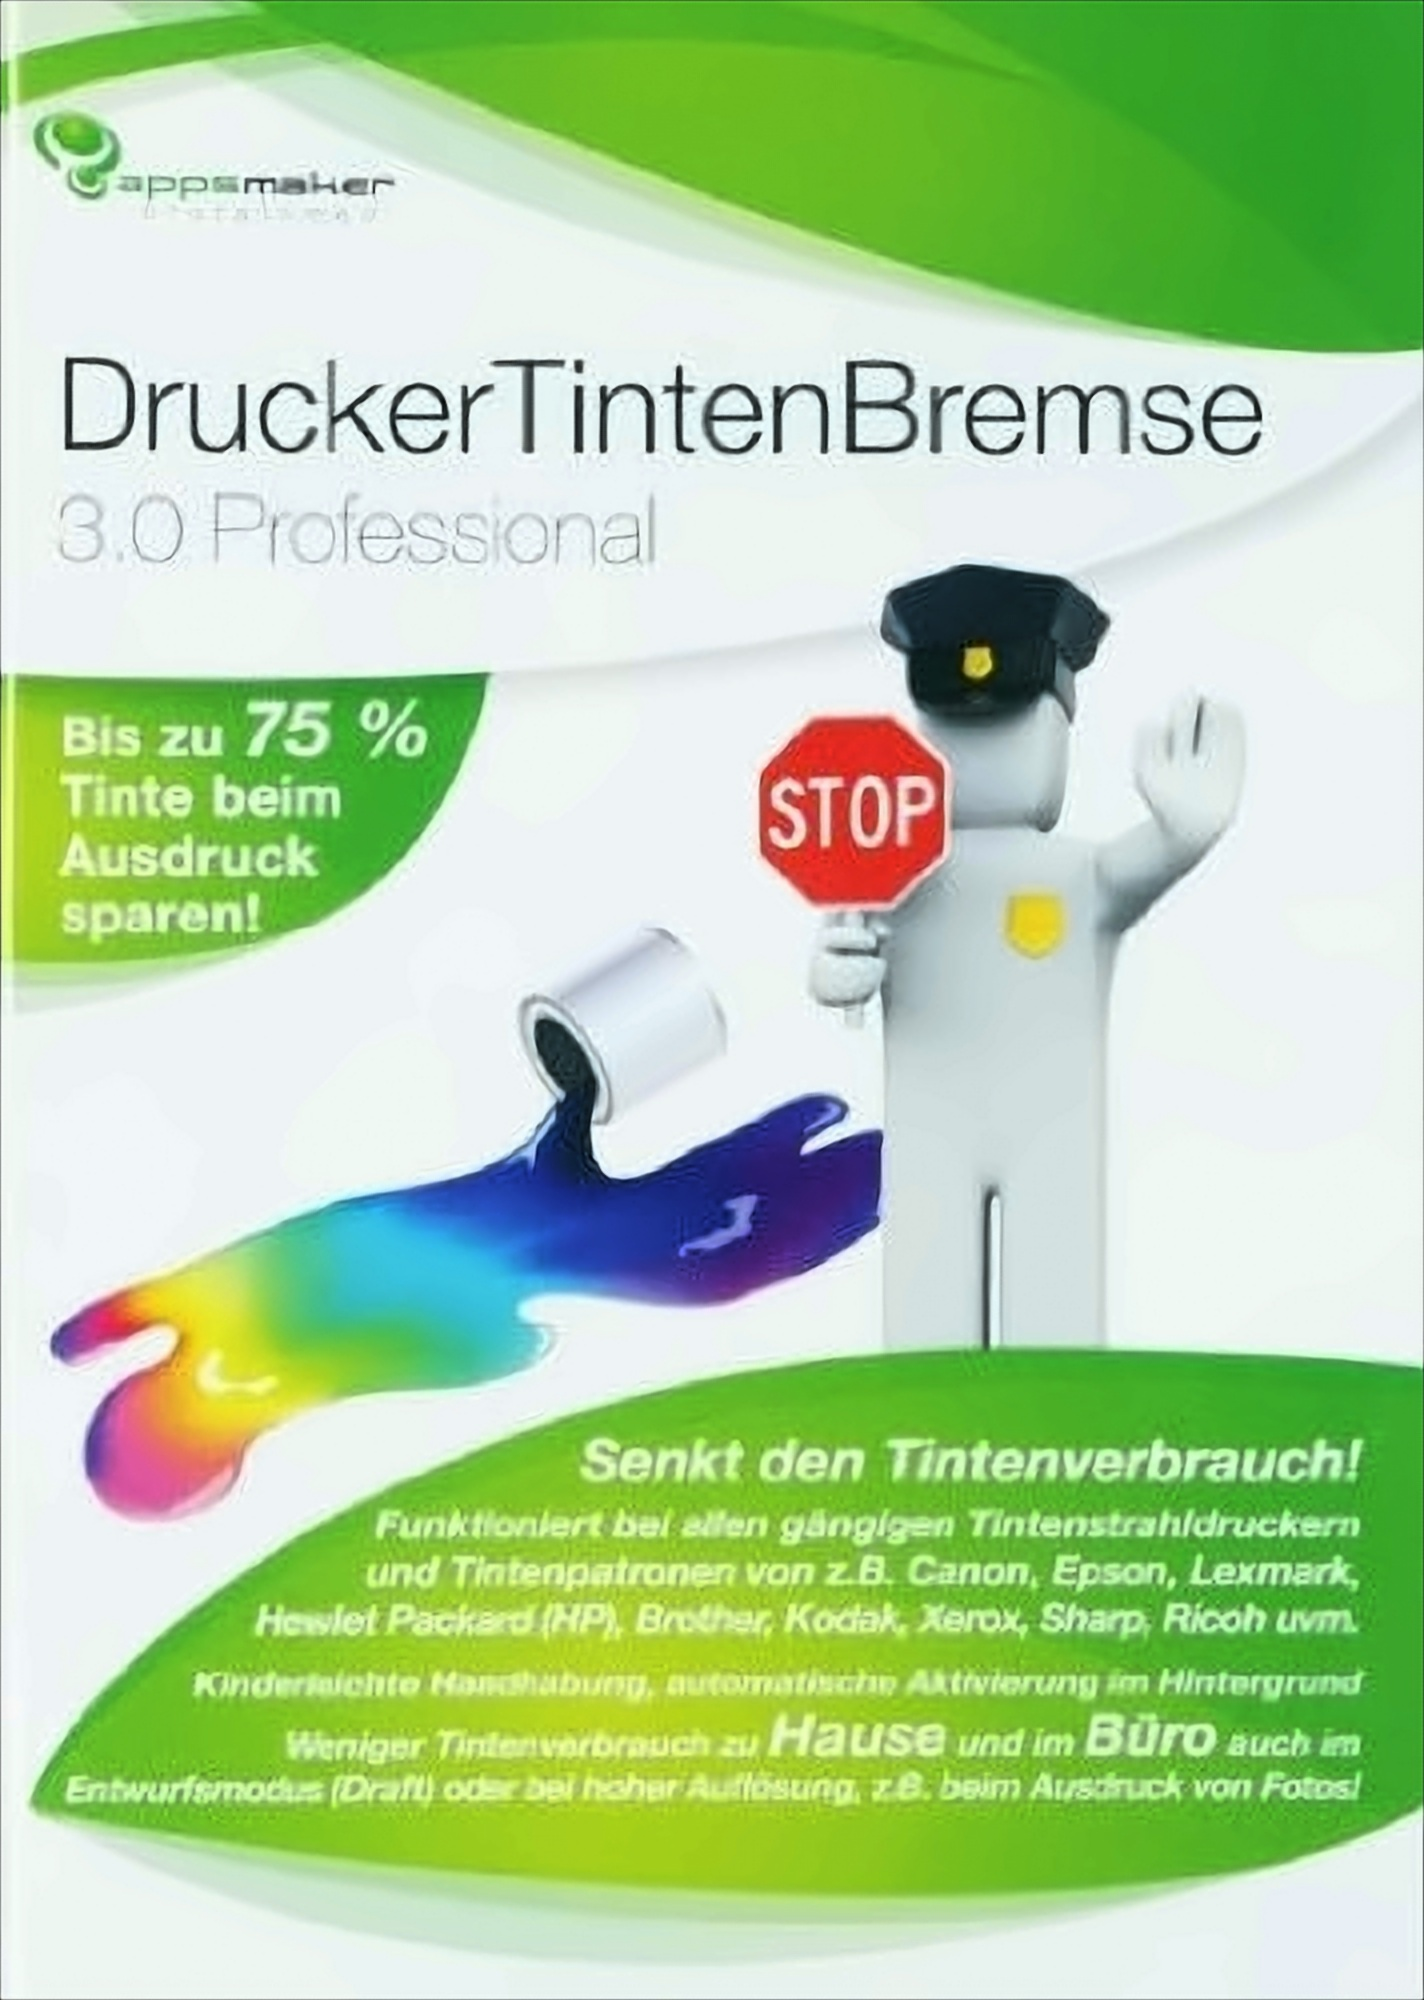 [PC] - 3.0 Professional DruckerTintenBremse